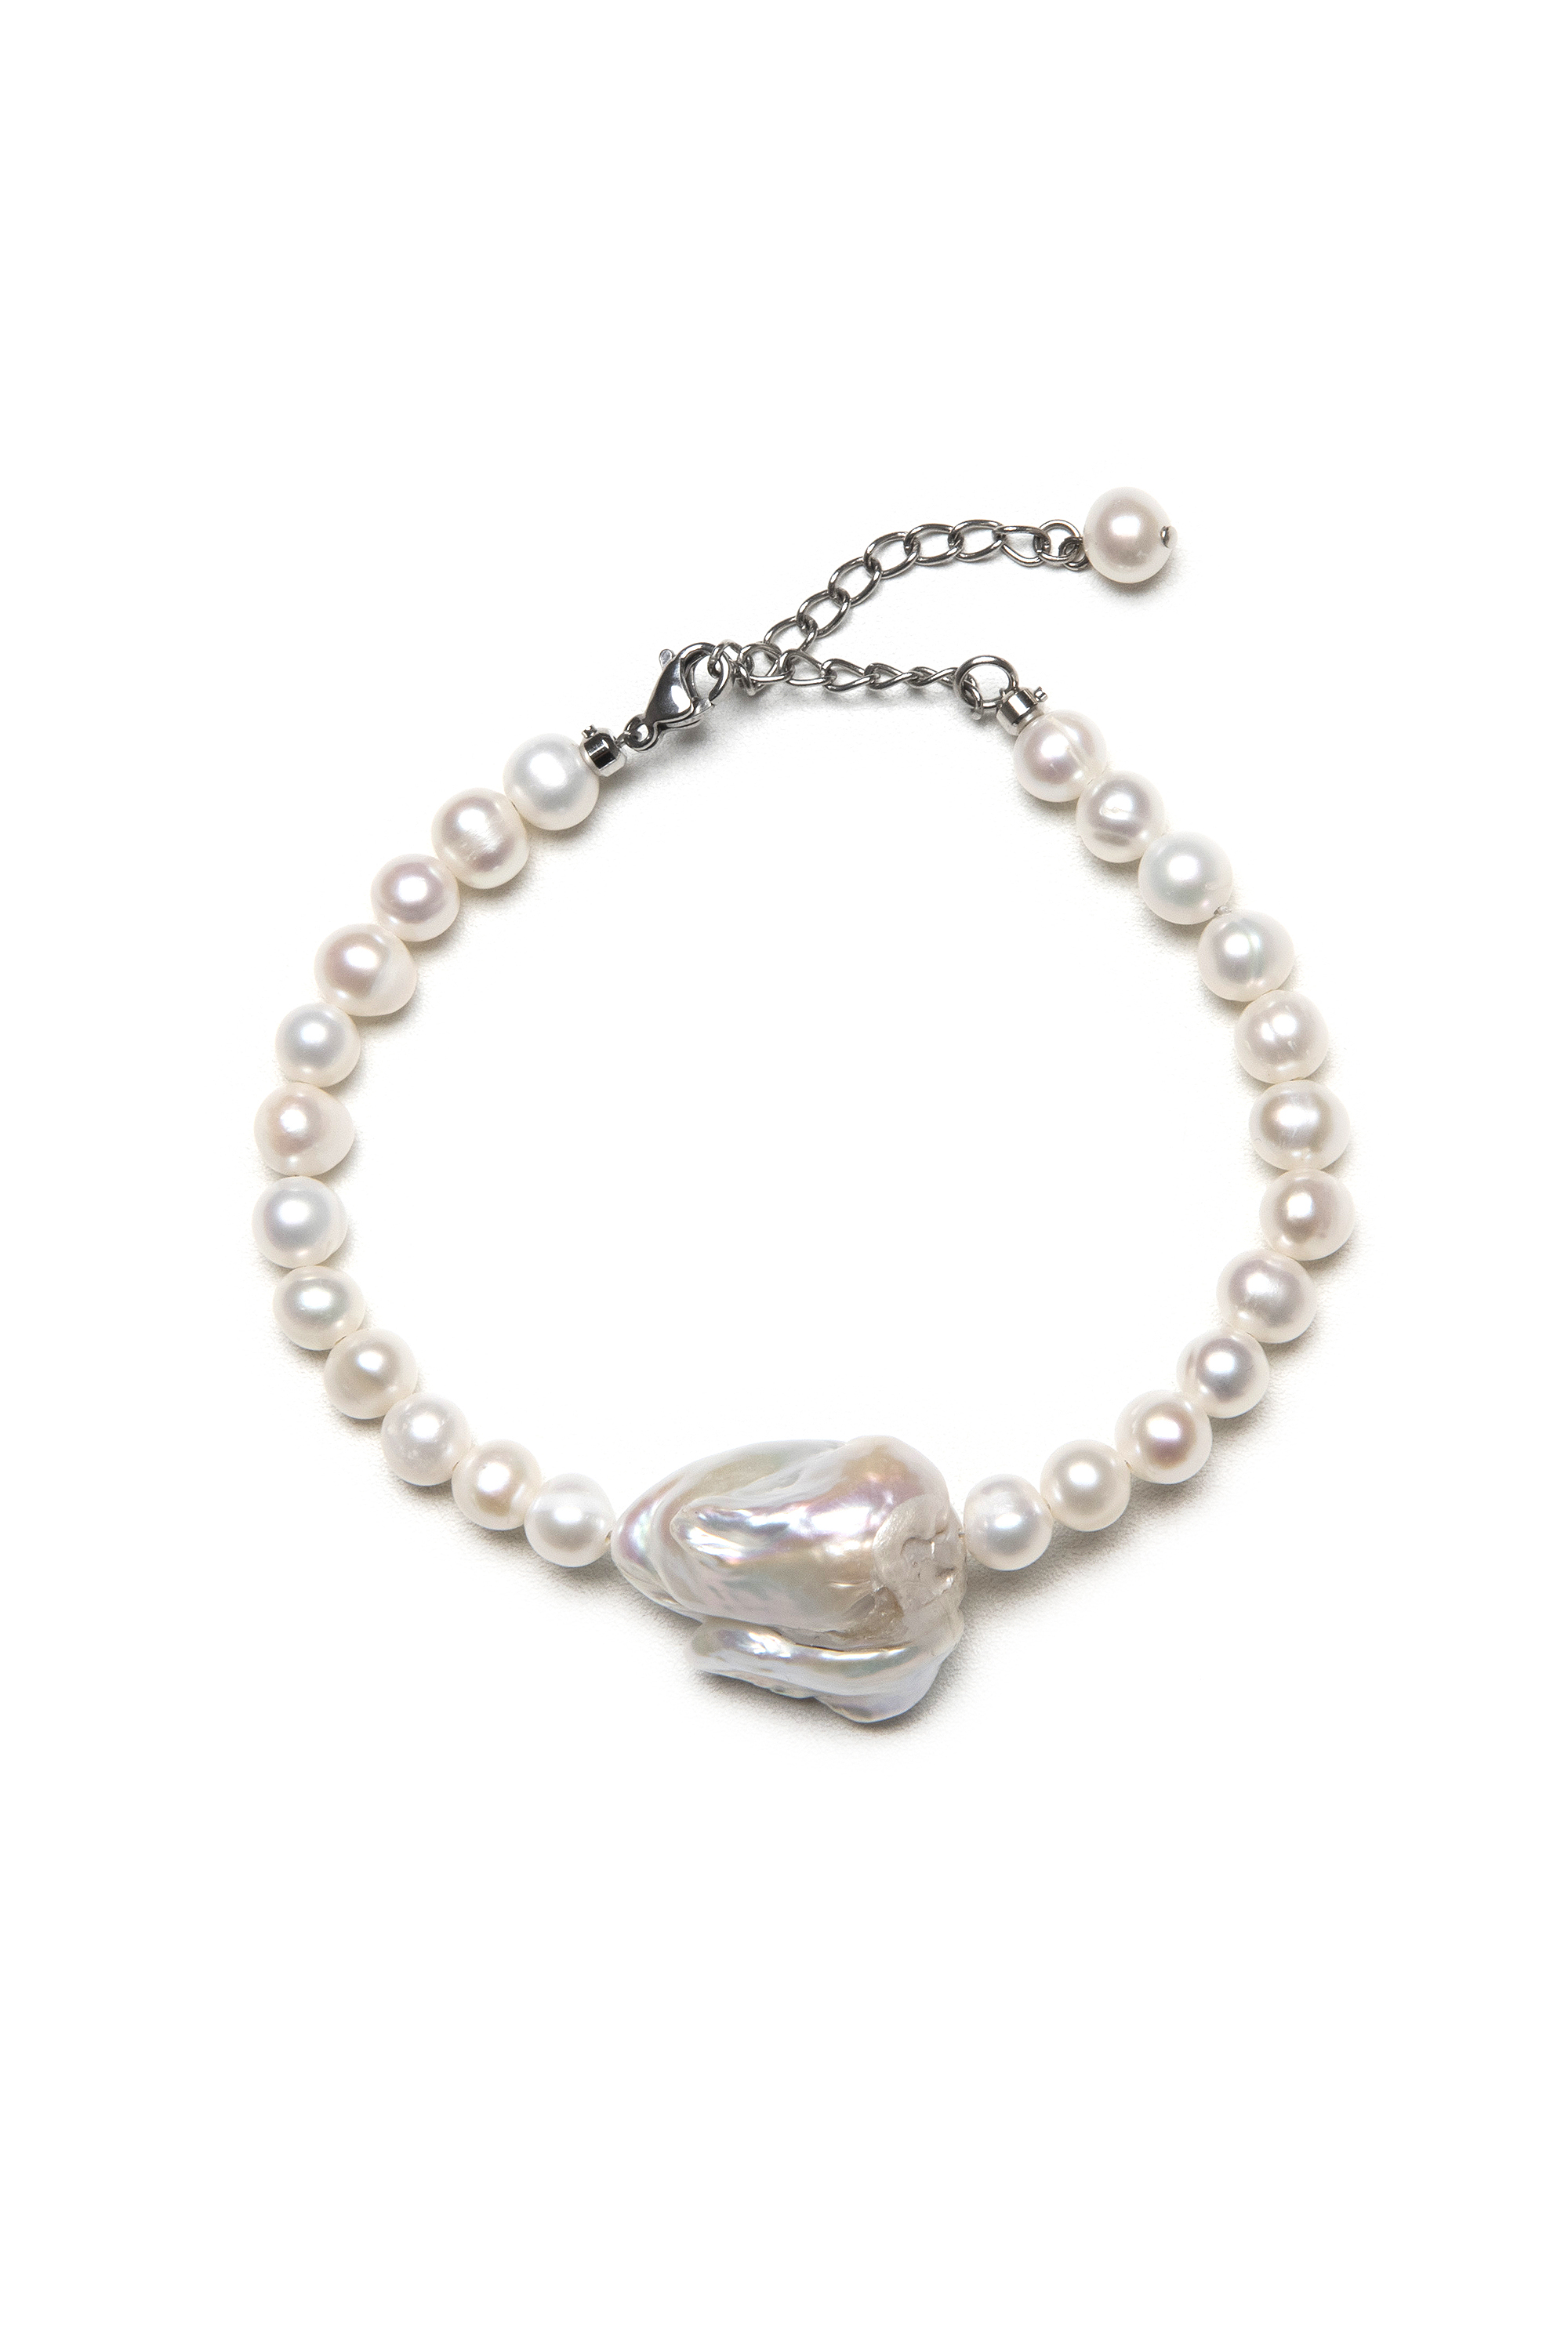 Heart freshwater pearl bracelet (order-made)